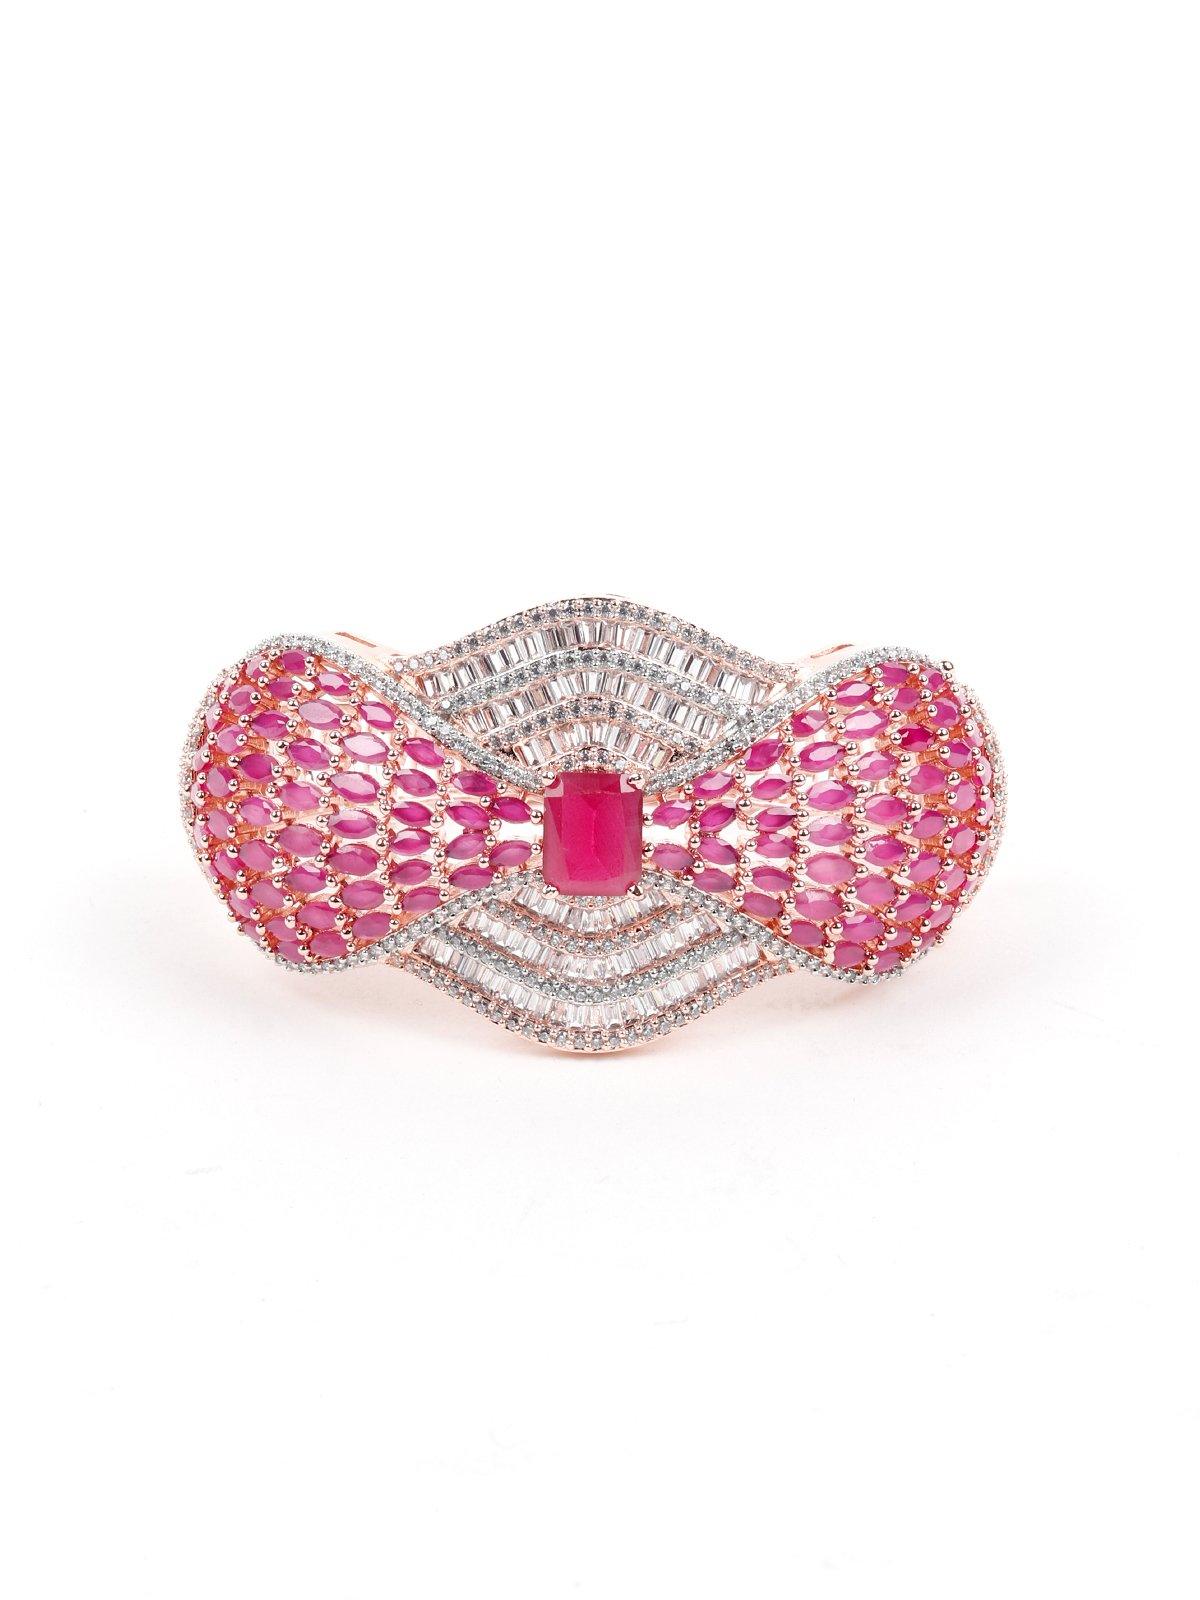 Curvy Pink Studded Bracelet - Odette